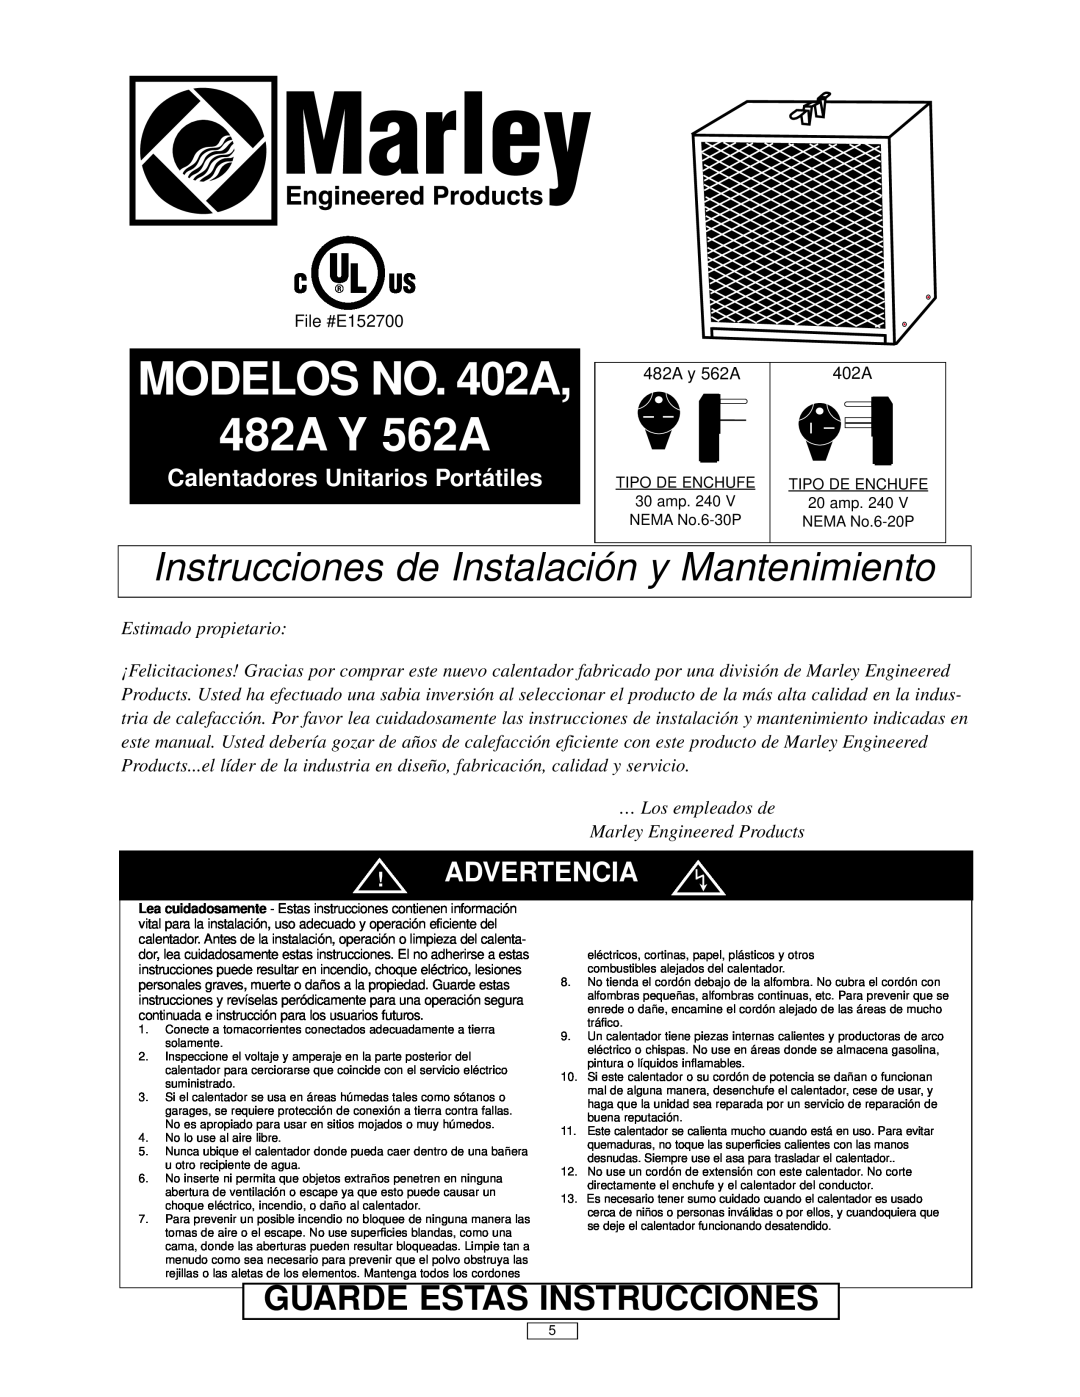 Marley Engineered Products MODELOS NO. 402A 482A Y 562A, Guarde Estas Instrucciones, Advertencia, Estimado propietario 